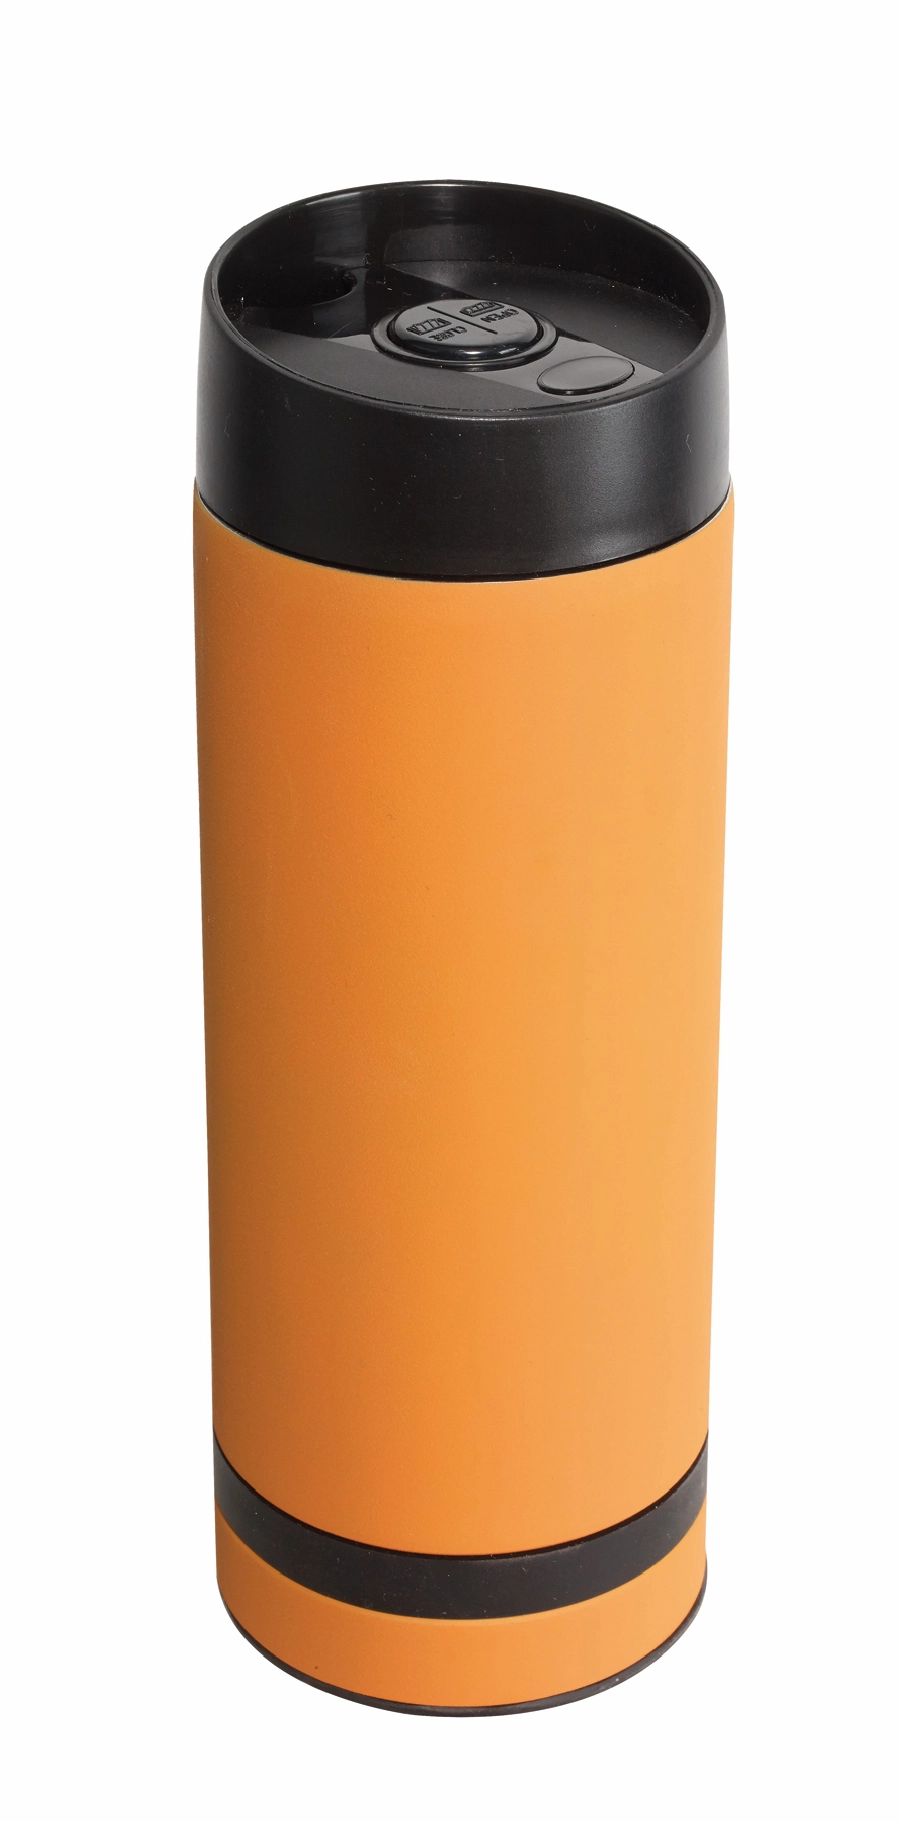 Kubek termiczny FLAVOURED, pomarańczowy 56-0304157 pomarańczowy